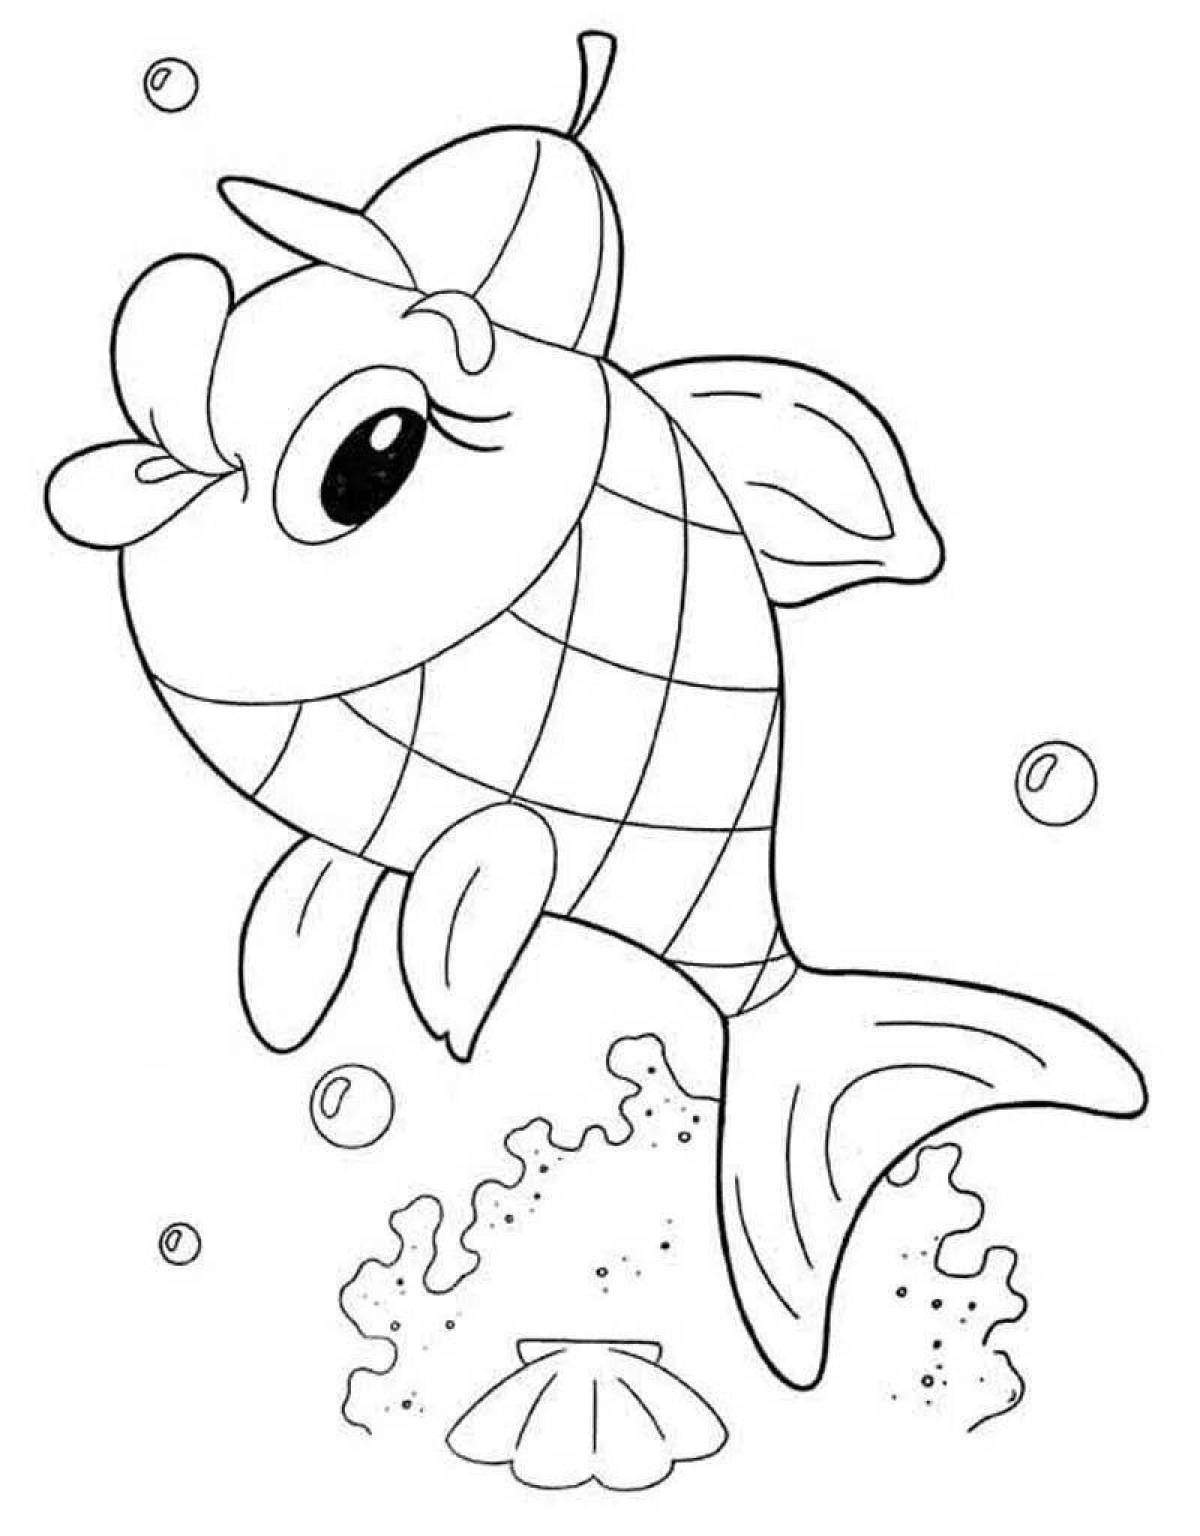 Раскраска игристая рыбка для детей